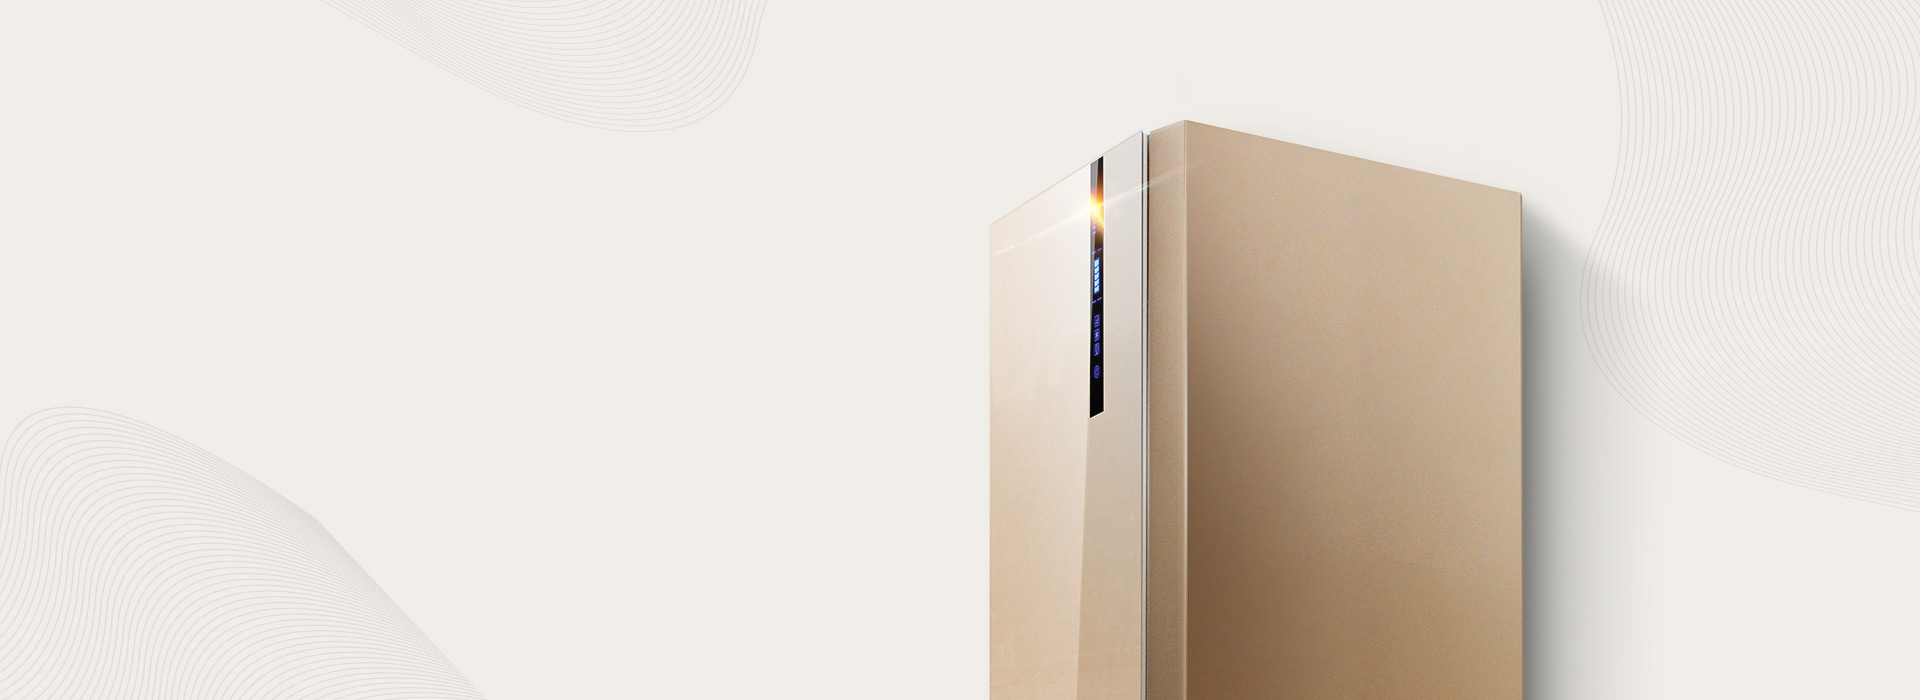 芬尼空气能热水器的铂金型300Lplus高配升级，走心的艺术品